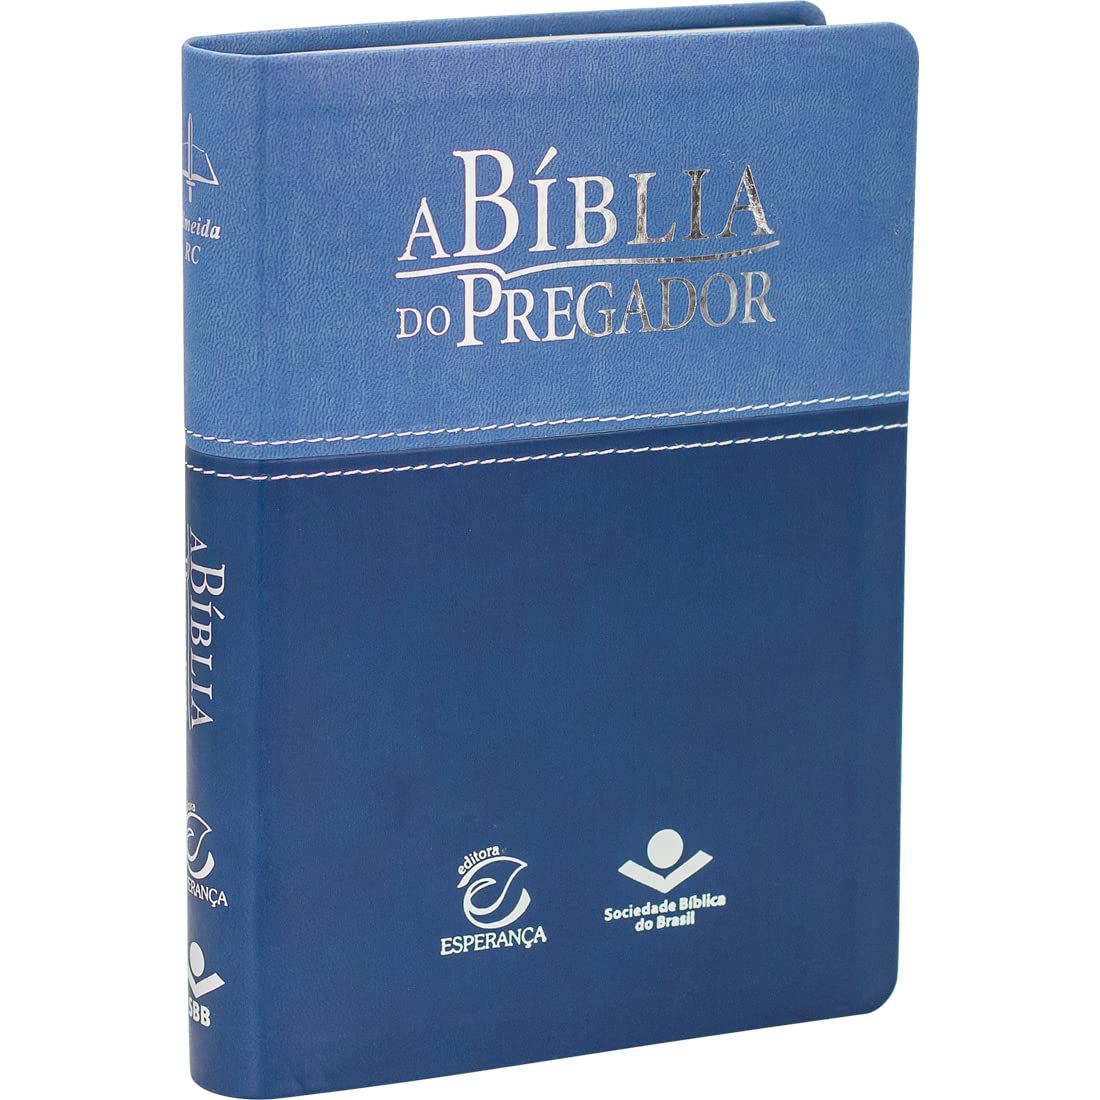 Alet Store - A Sua Livraria Online: Livros, Bíblias, Presentes e Muito Mais